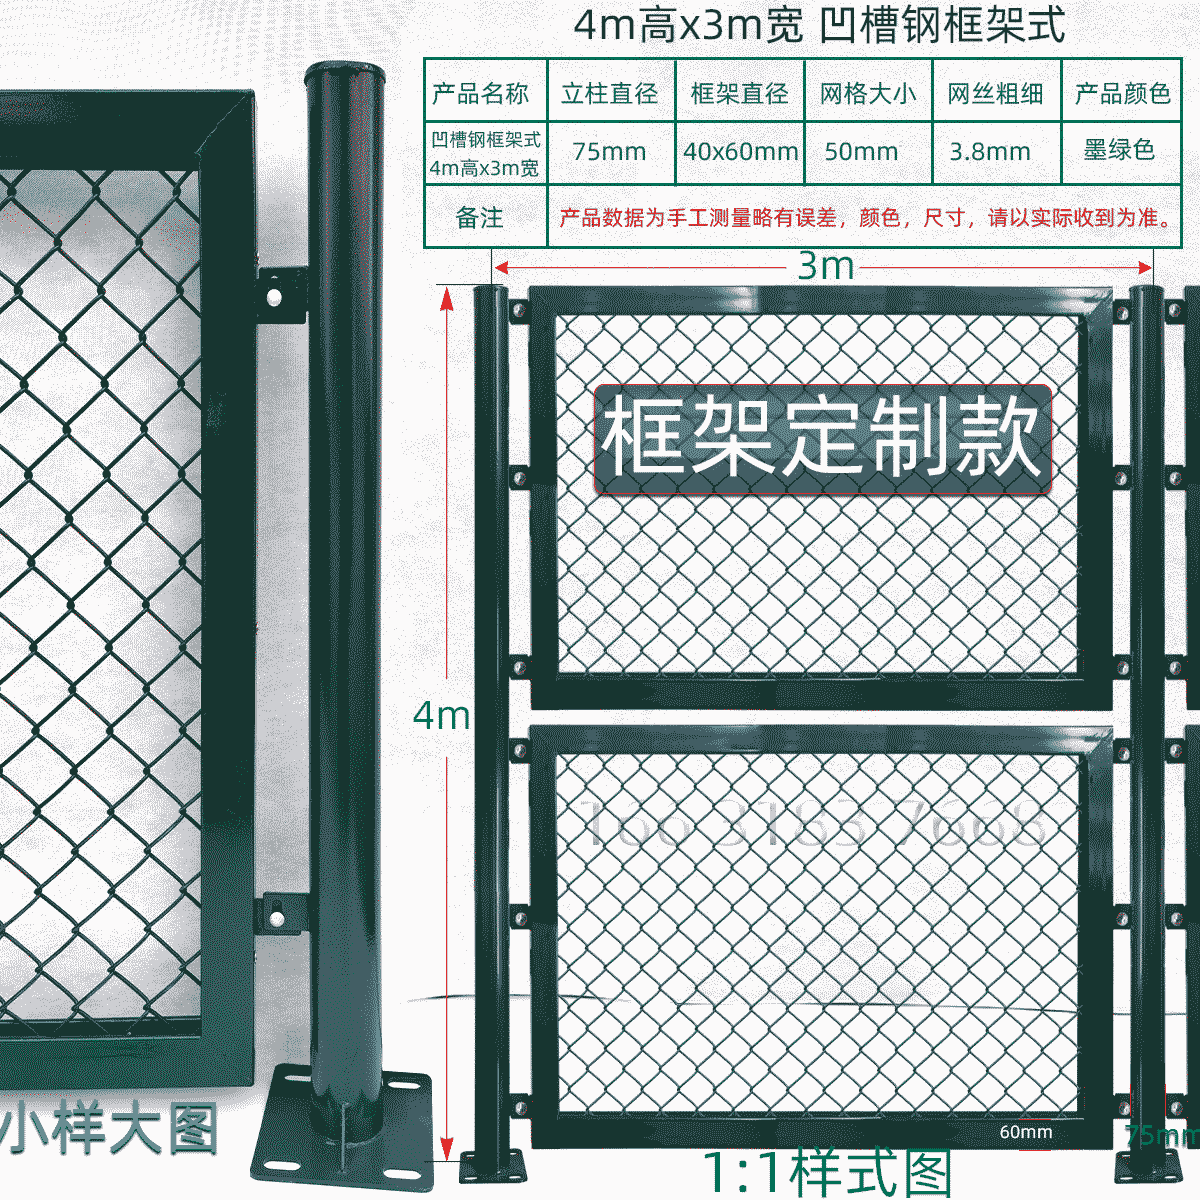 4m高x3m宽凹槽管内嵌式球场围栏网